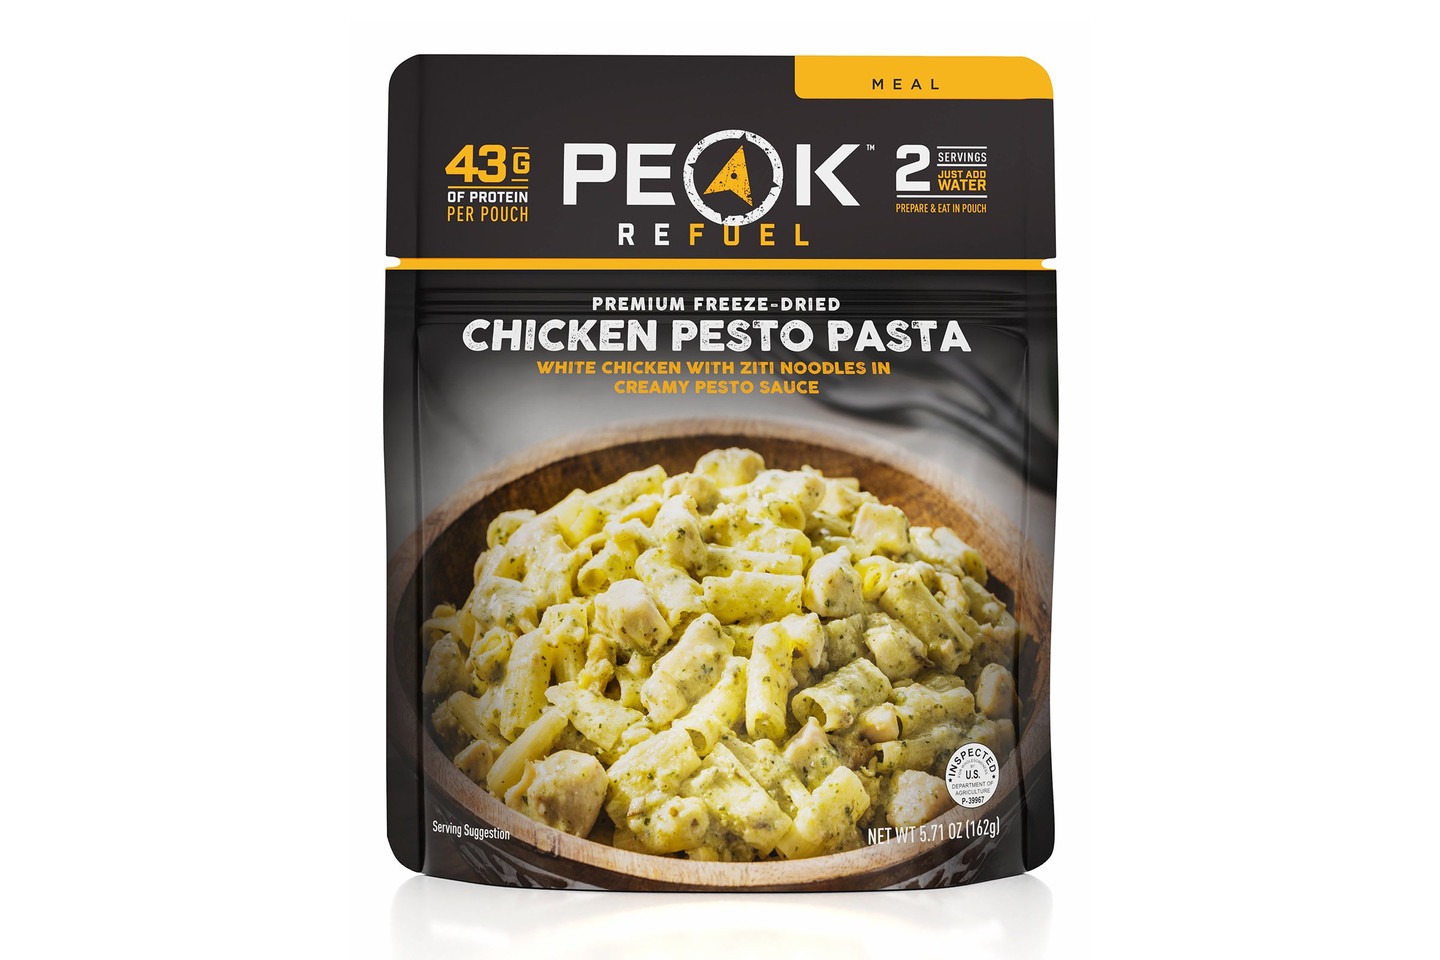 Peak Refuel Chicken Pesto Pasta 2 Serving Pouch